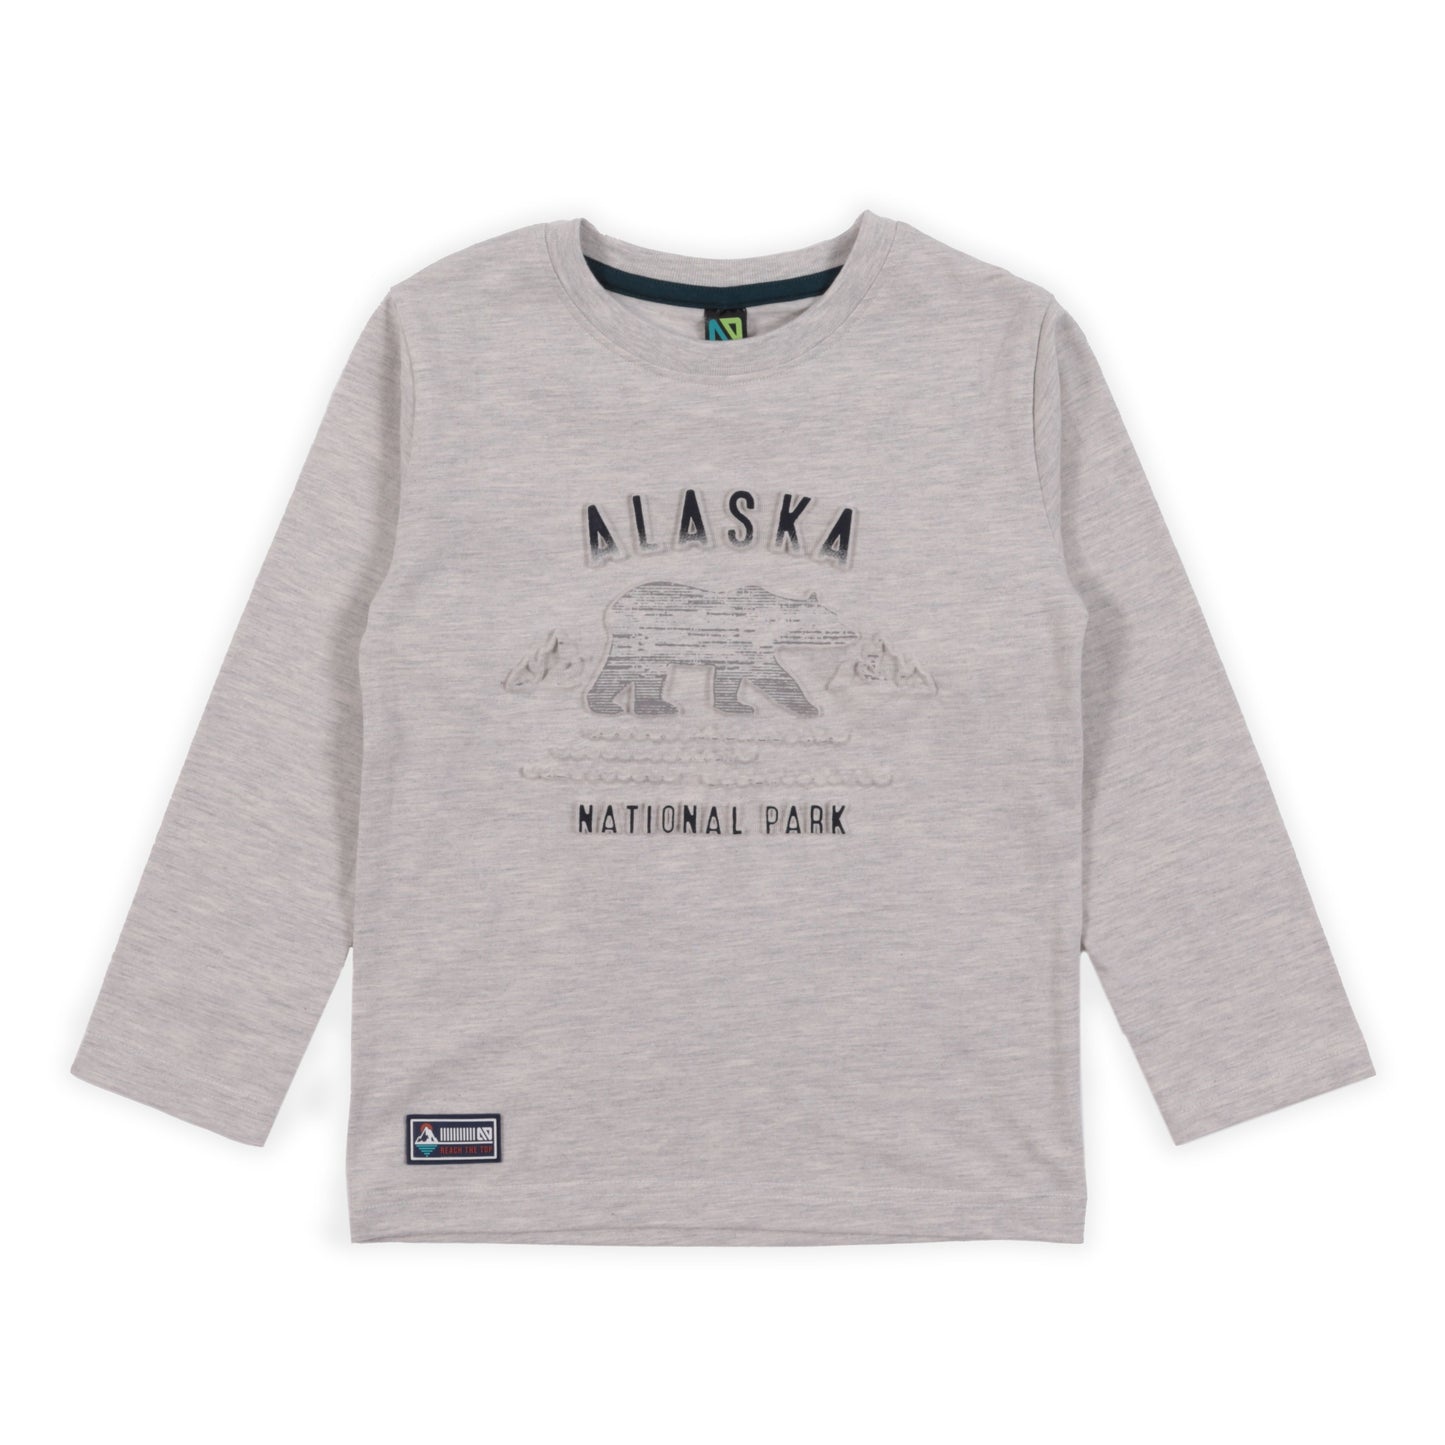 Boutique Petites Fleurs - T-shirt à manche longue alaska BOREAL F2301-09 - nano collection